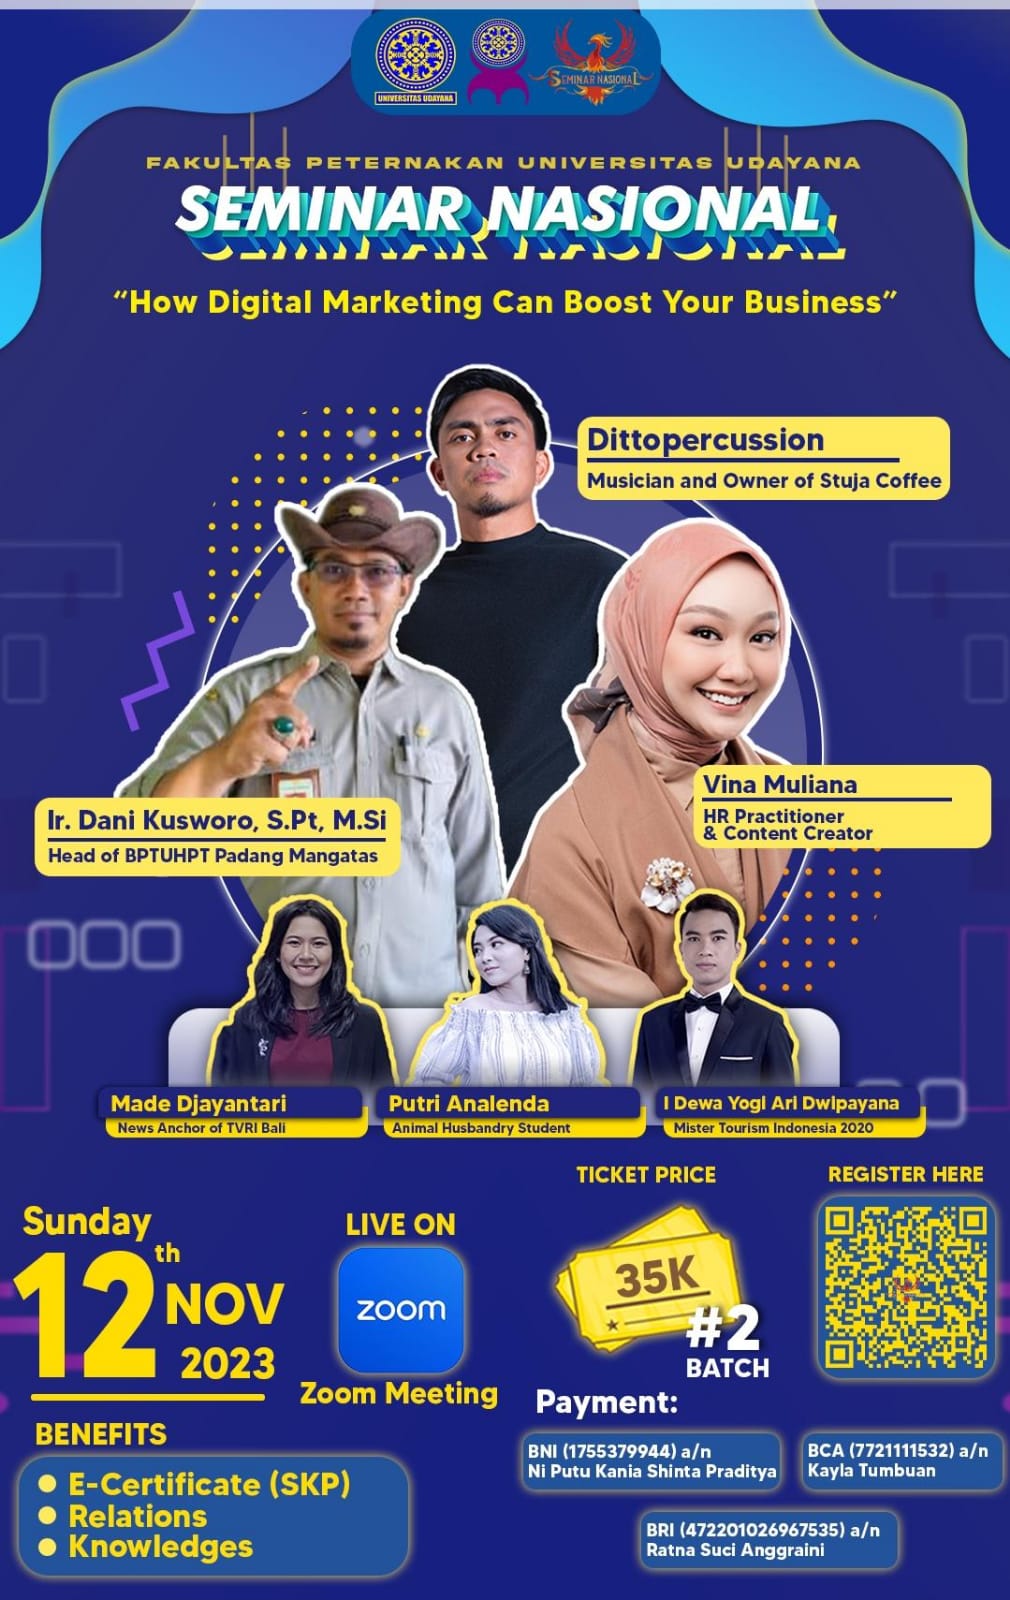 BEM-KM Fapet Unud Gelar Seminar Nasional, Tingkatkan Bisnis Melalui Pemasaran Digital 